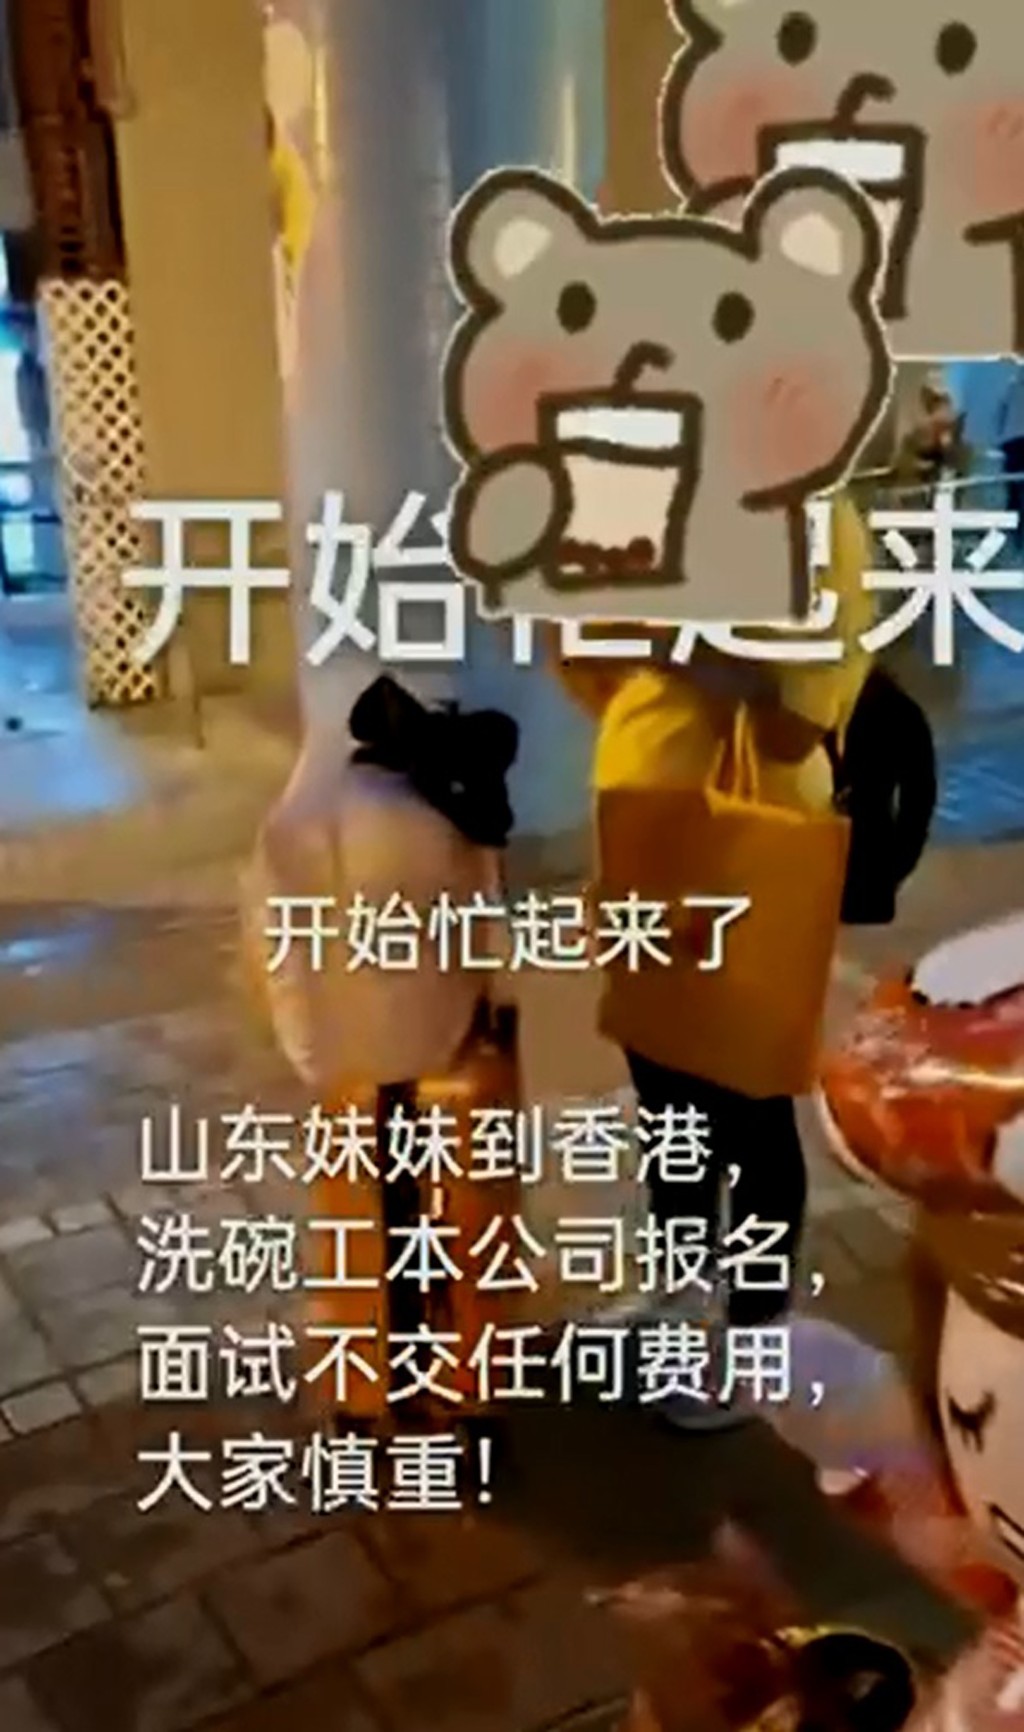 中介发放一名女子在香港街头的短片，称山东女子赴港当洗碗工人。 